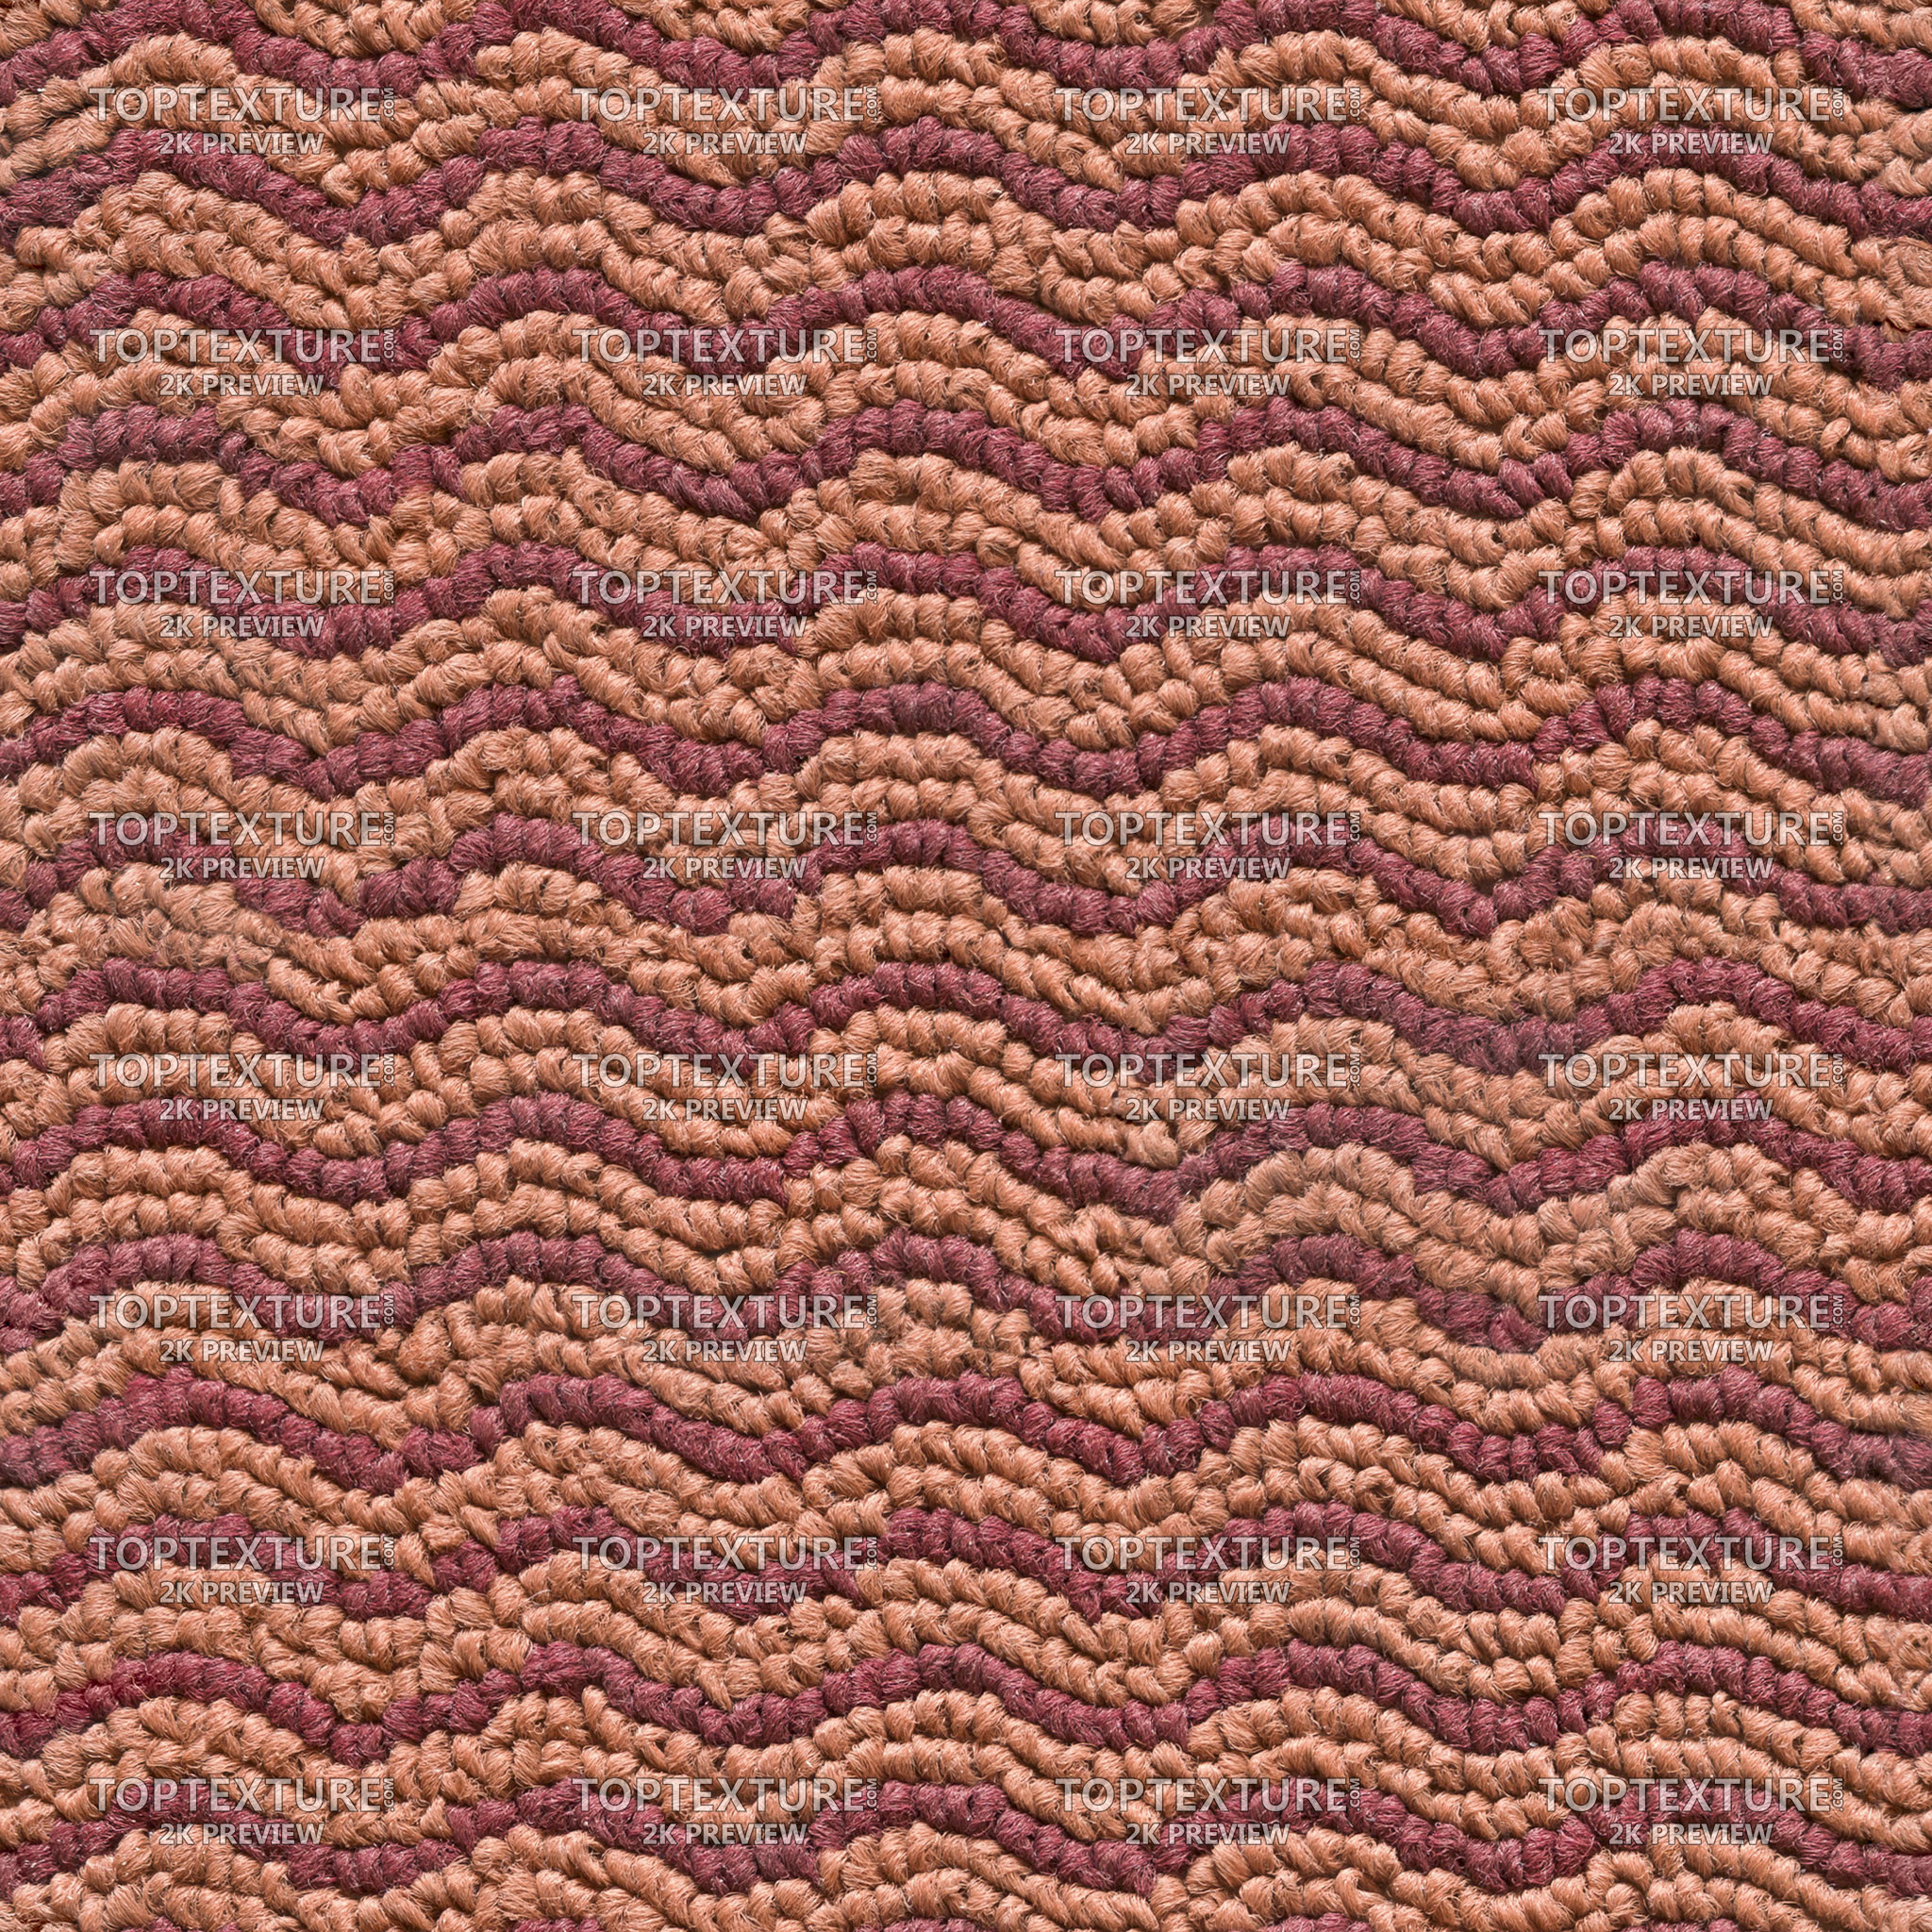 Moquette Carpet Waves - 2K preview